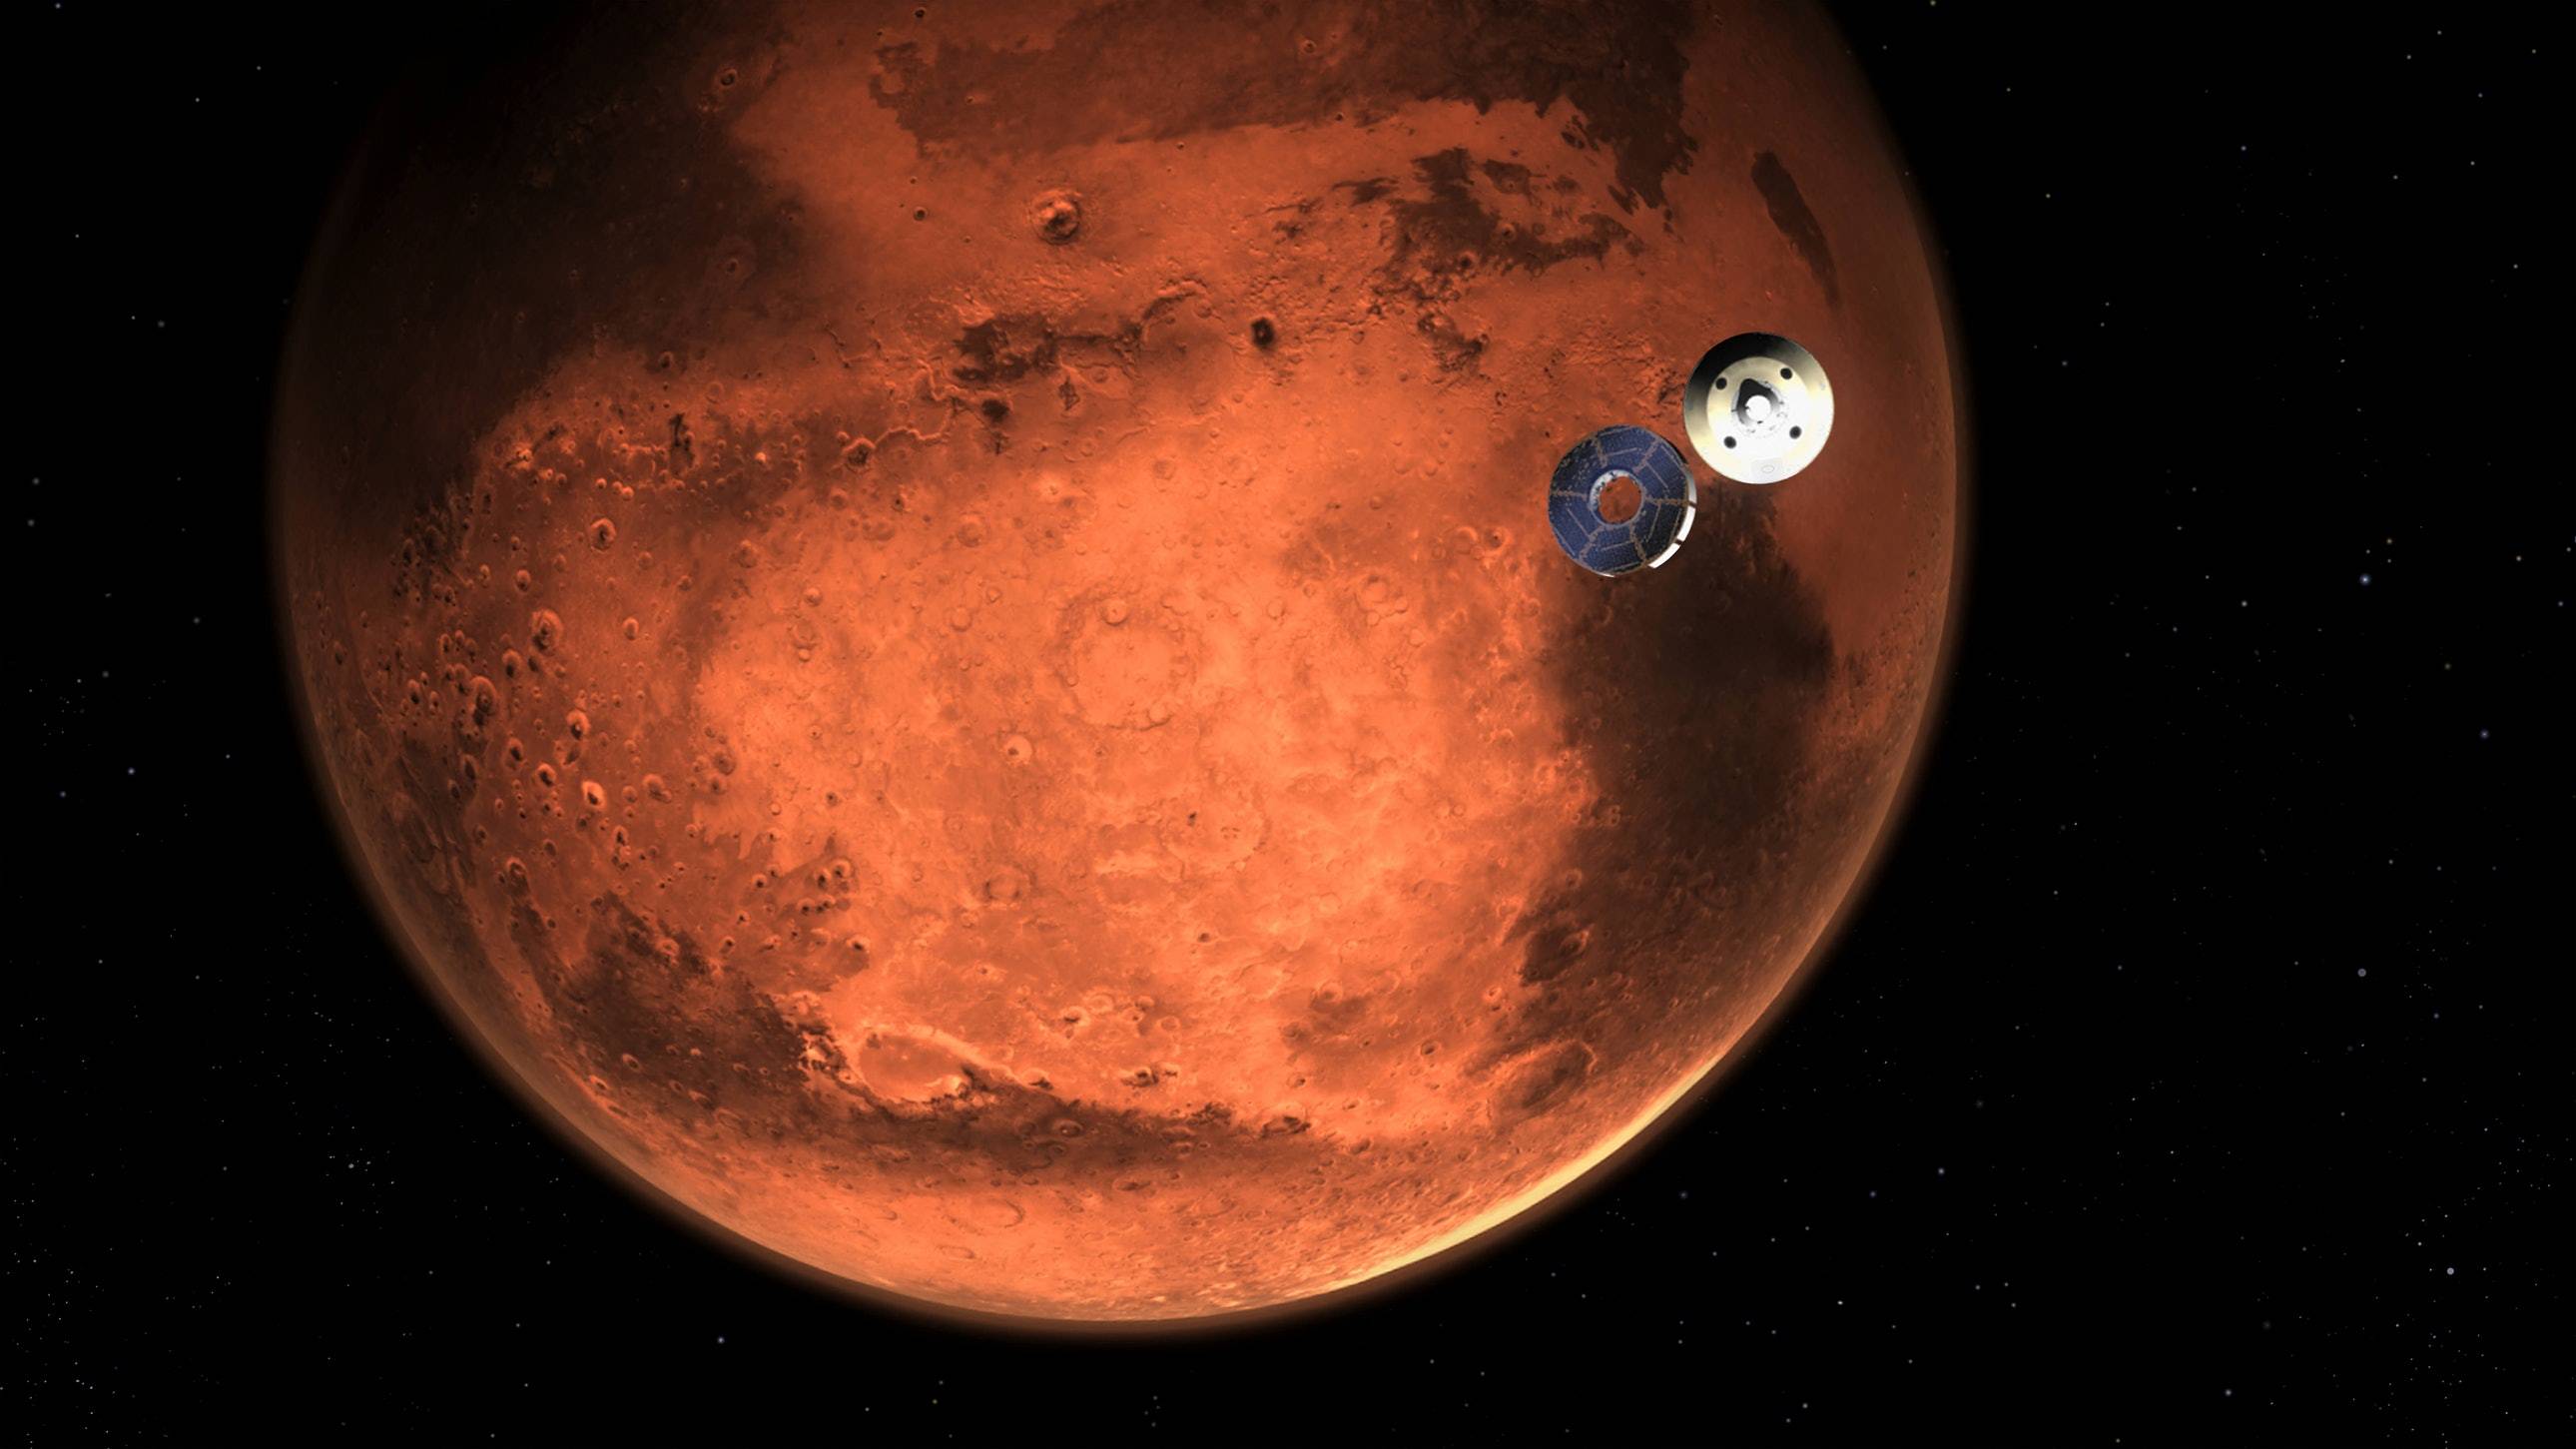 123 1 - Viene pubblicata la prima guida alla vita su Marte: cibo vegetariano completo, città verticale, lavoro part-time retribuito?